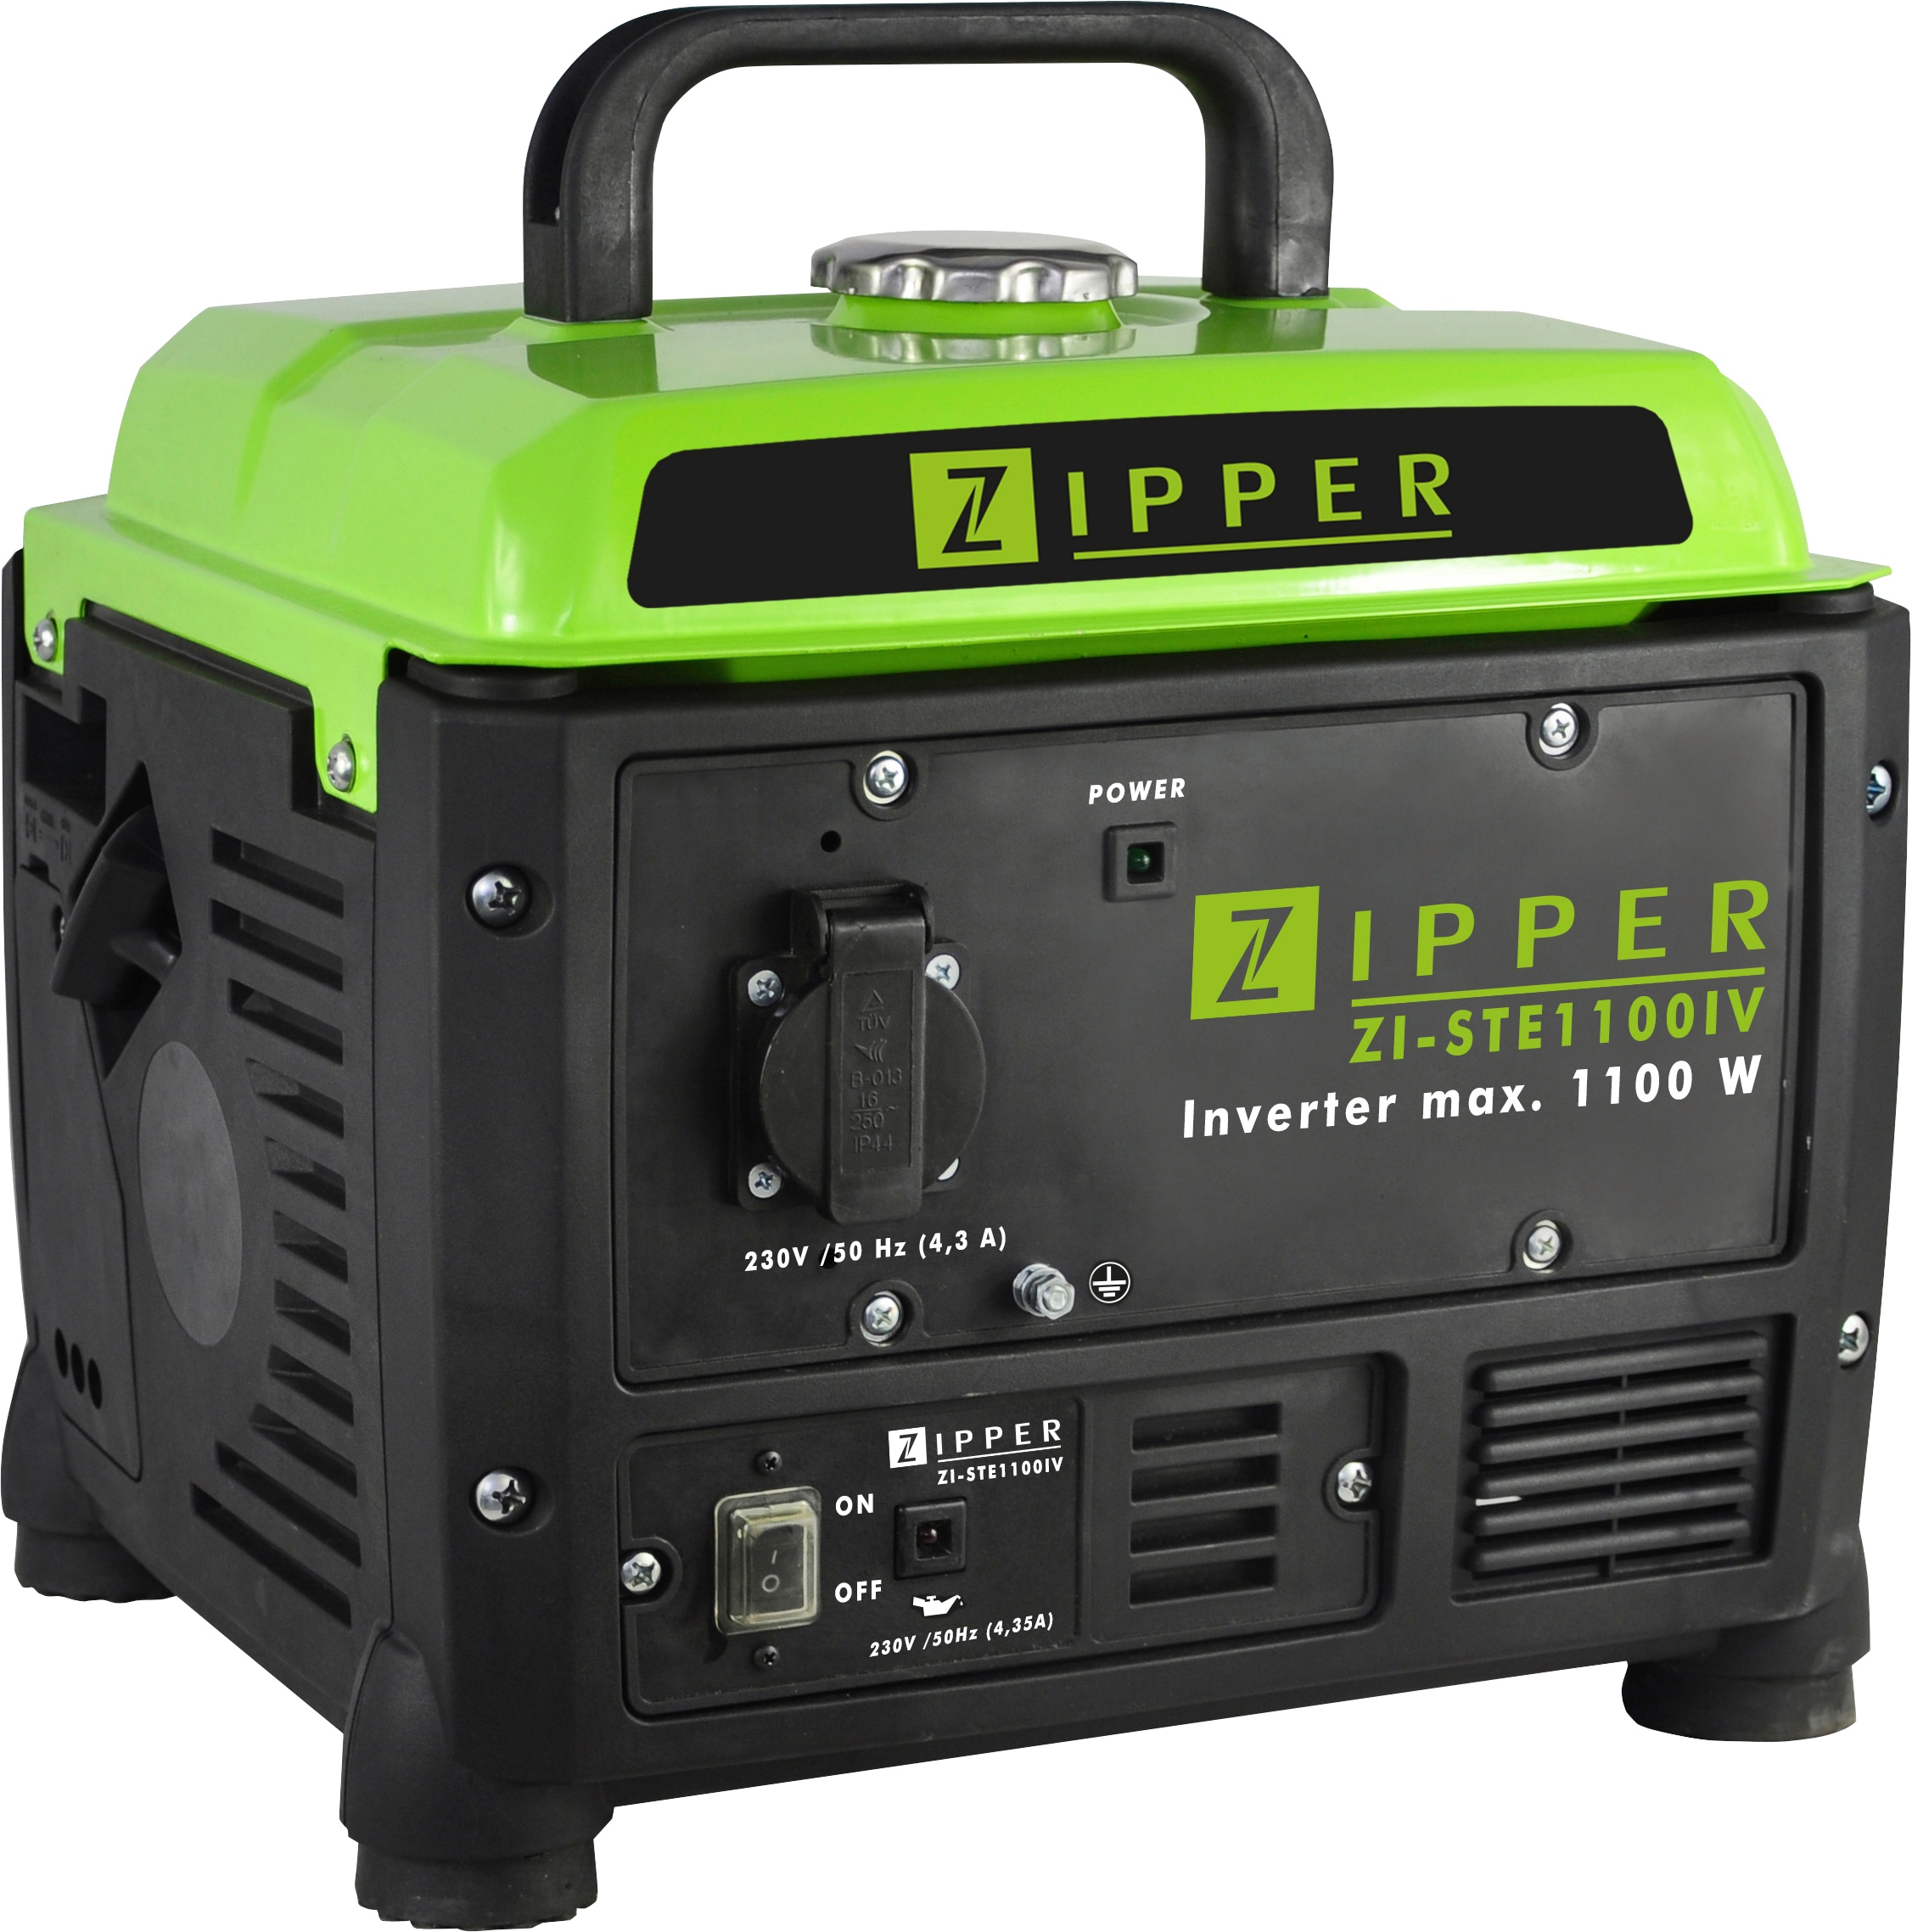 ZIPPER Stromerzeuger su einfacher Bedienung